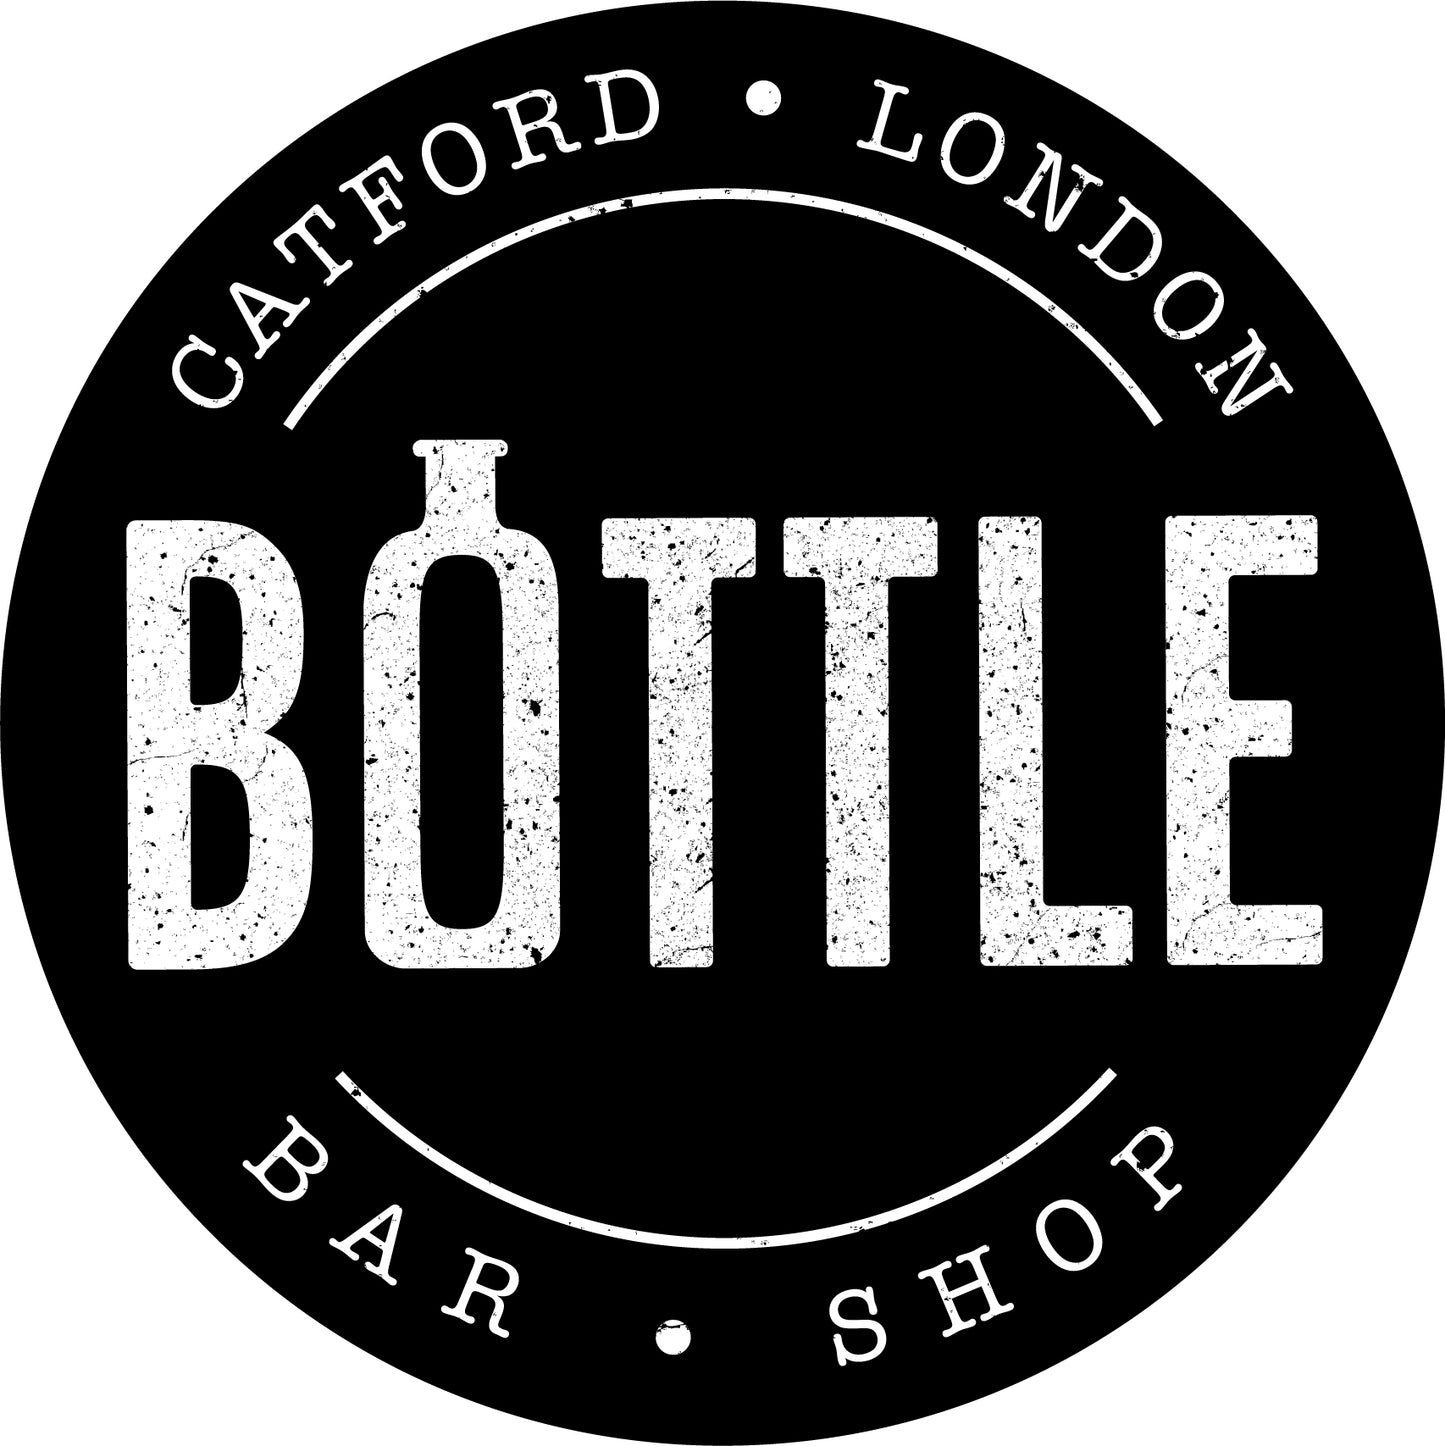 Bottle Bar and Shop